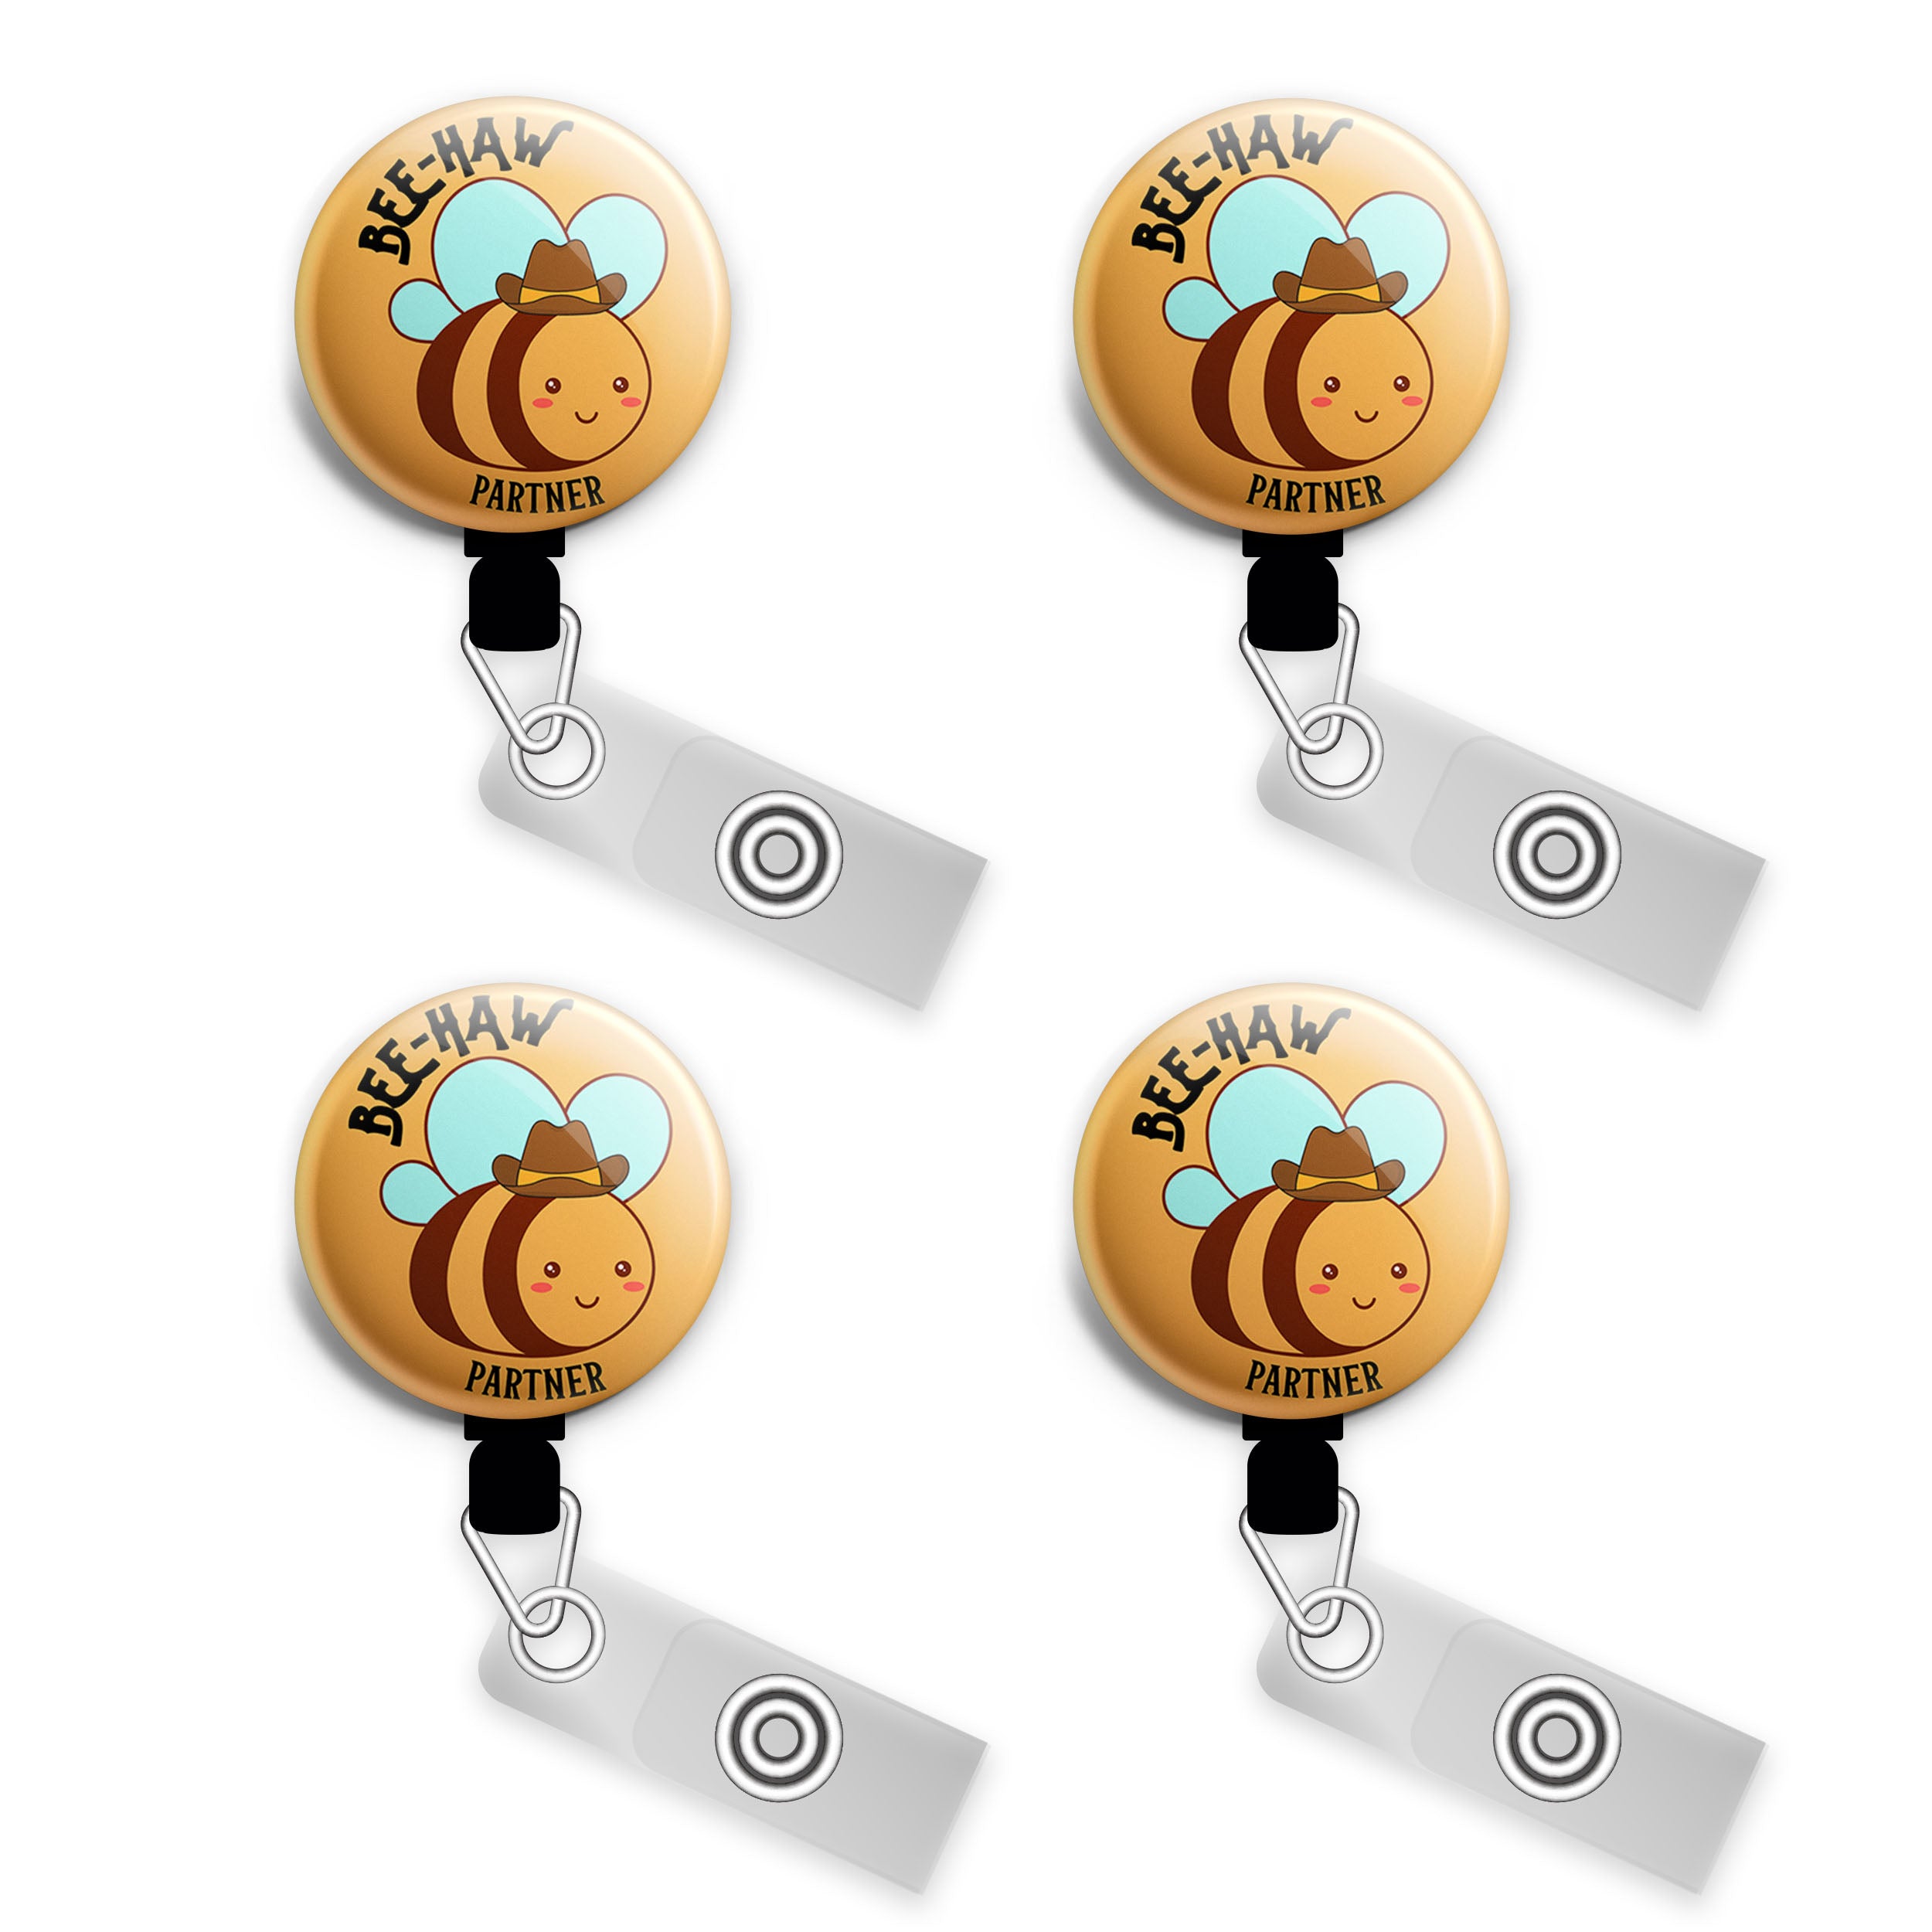 Bee-Haw Partner Swapfinity Retractable ID Badge Reel -  - Topperswap